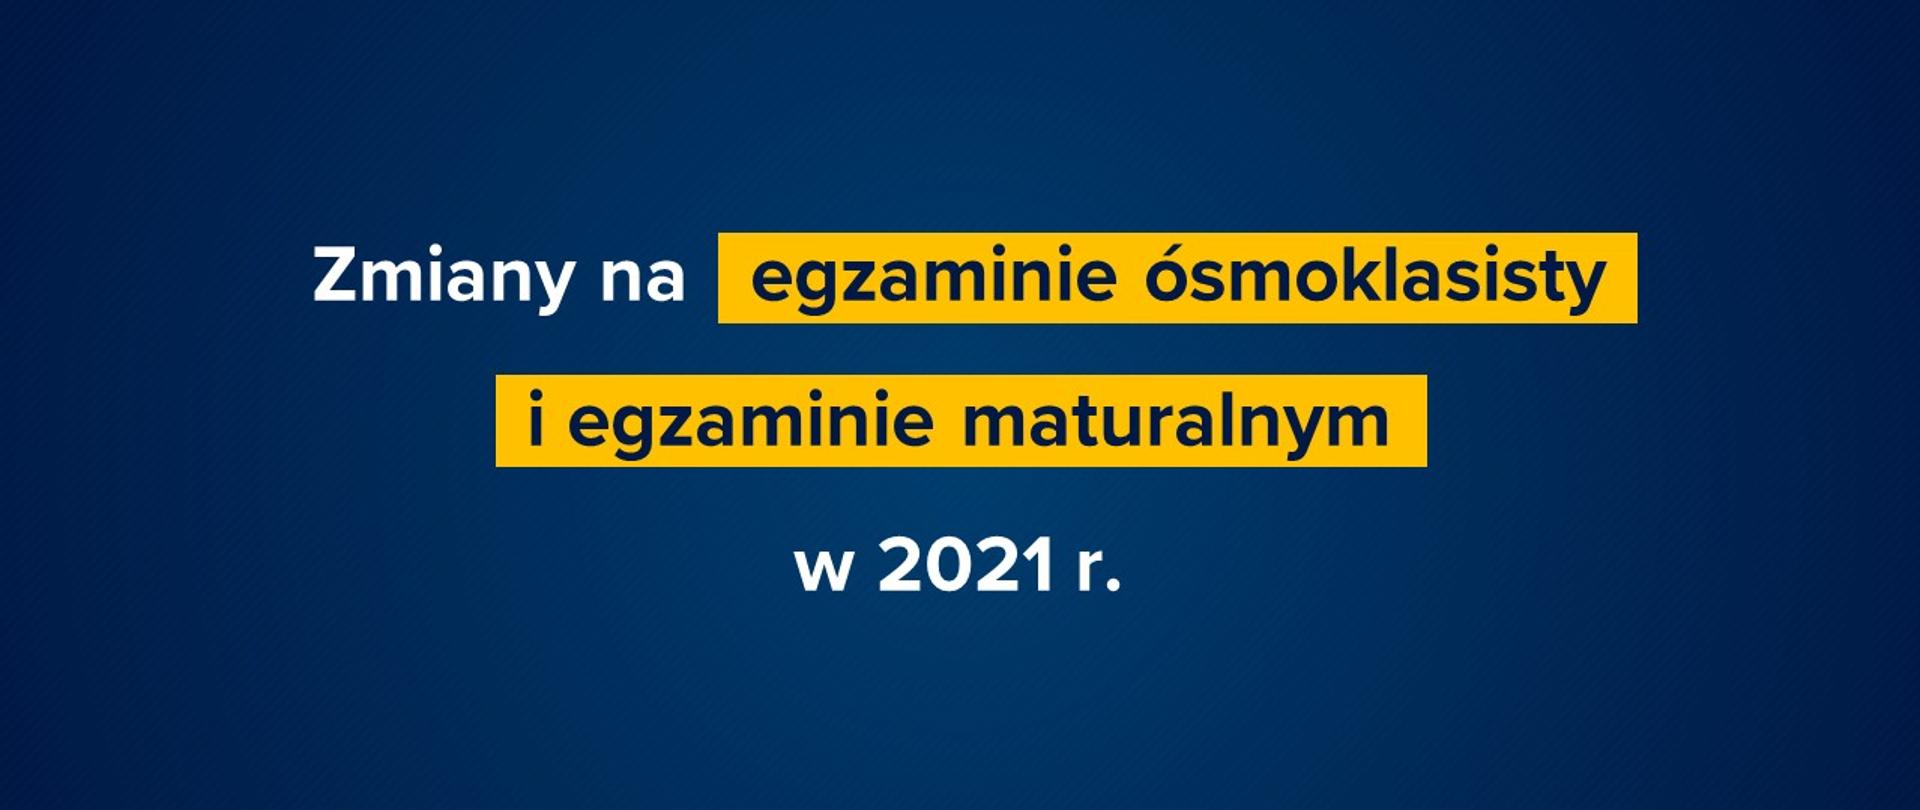 Granatowe tło z tekstem "Zmiany na egzaminie ósmoklasisty i egzaminie maturalnym w 2021 r."